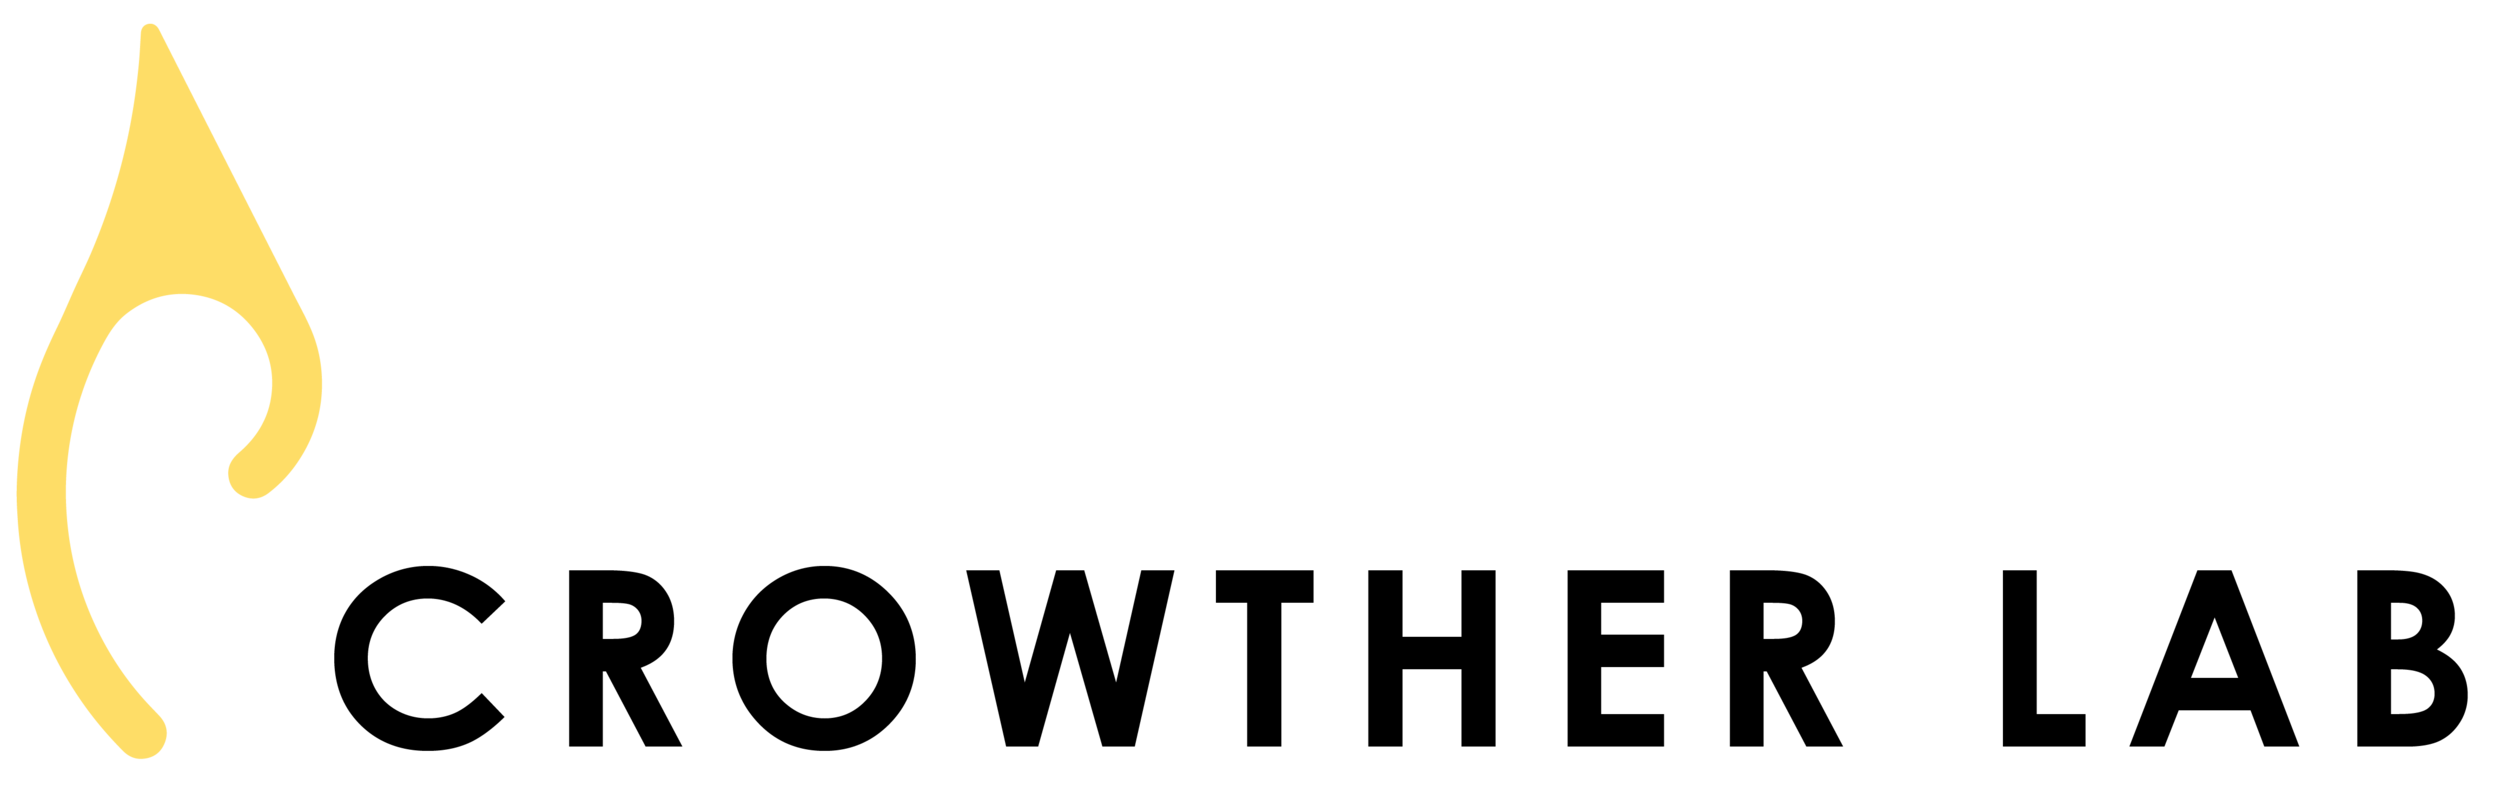 Logo_text_transparent (1).png